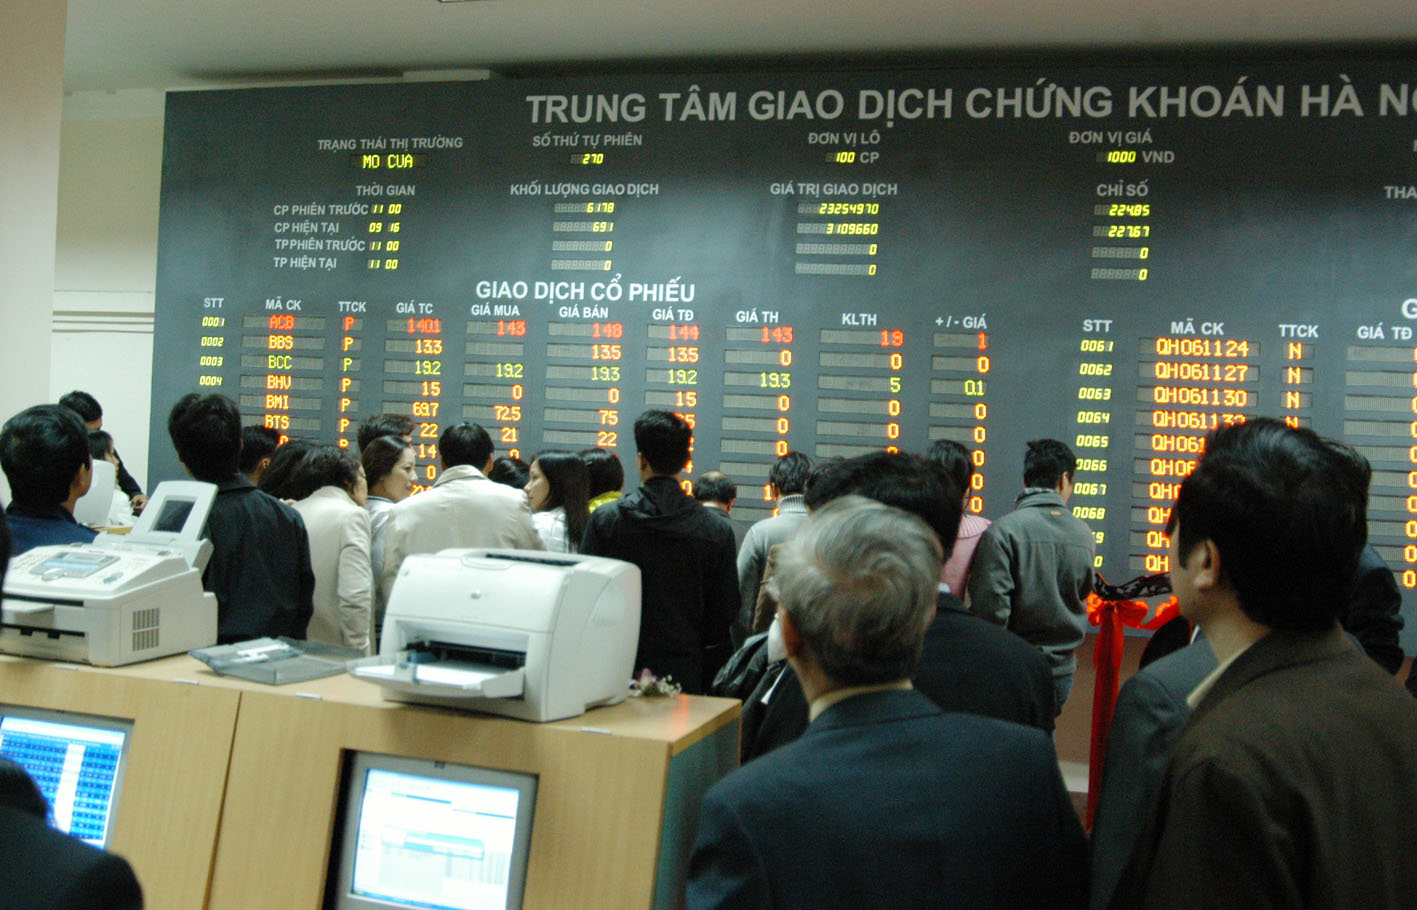 Chứng khoán Việt Nam năm 2014 đang cực kỳ hấp dẫn các nhà đầu tư lớn